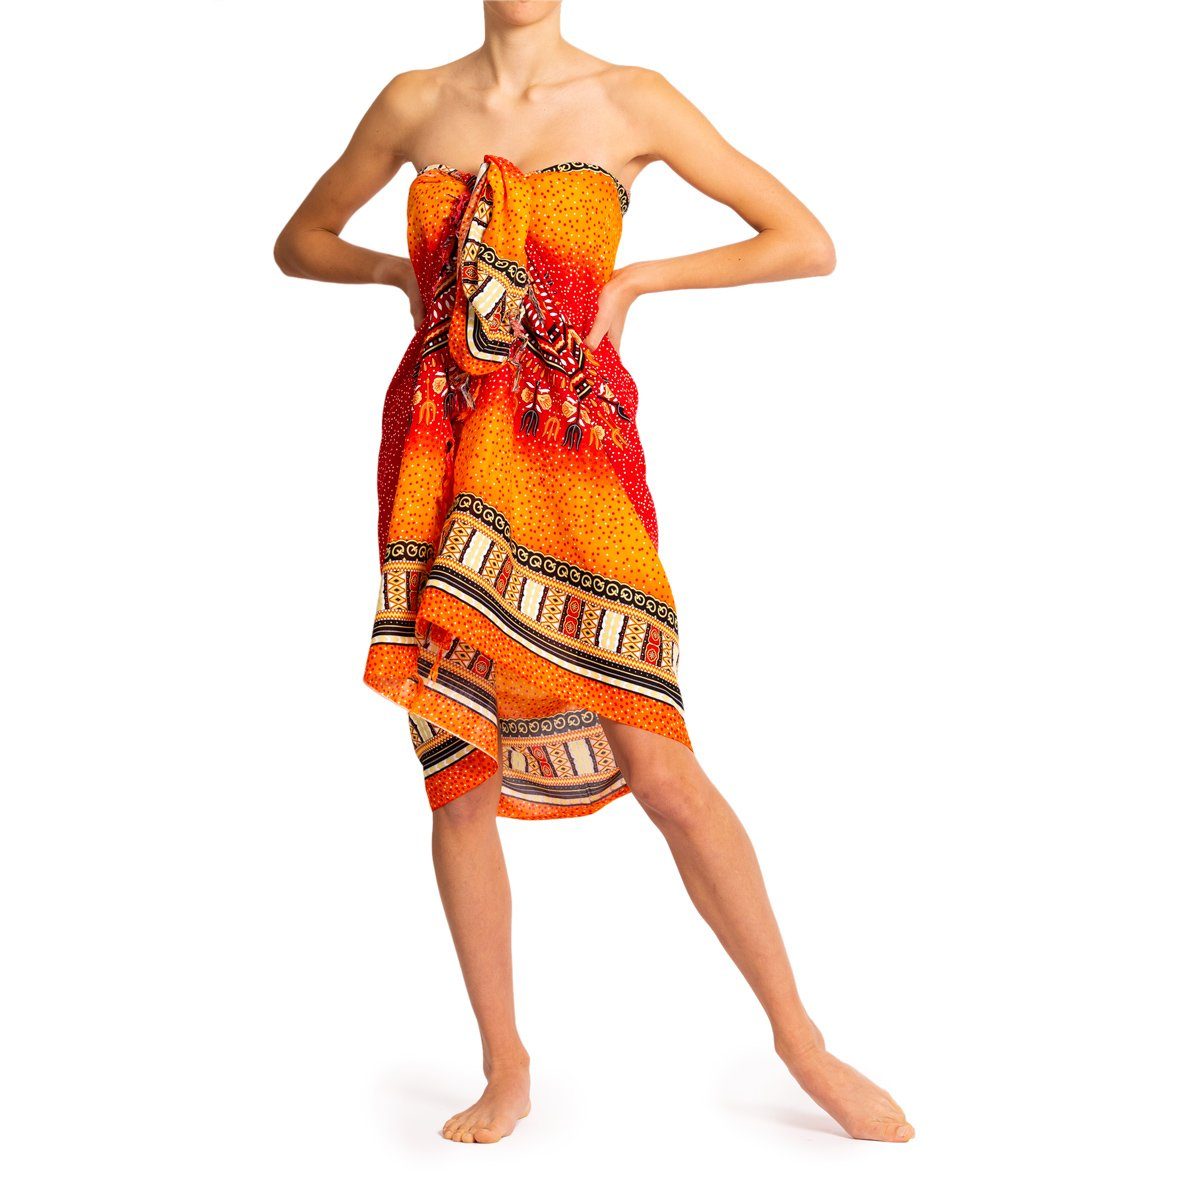 Wrap PANASIAM als Strandkleid auch für Strandtuch Maoi Bikini tragbar Strand Sarong Tuch Pareo Größen Orange den in oder, großen Überwurf Cover-up